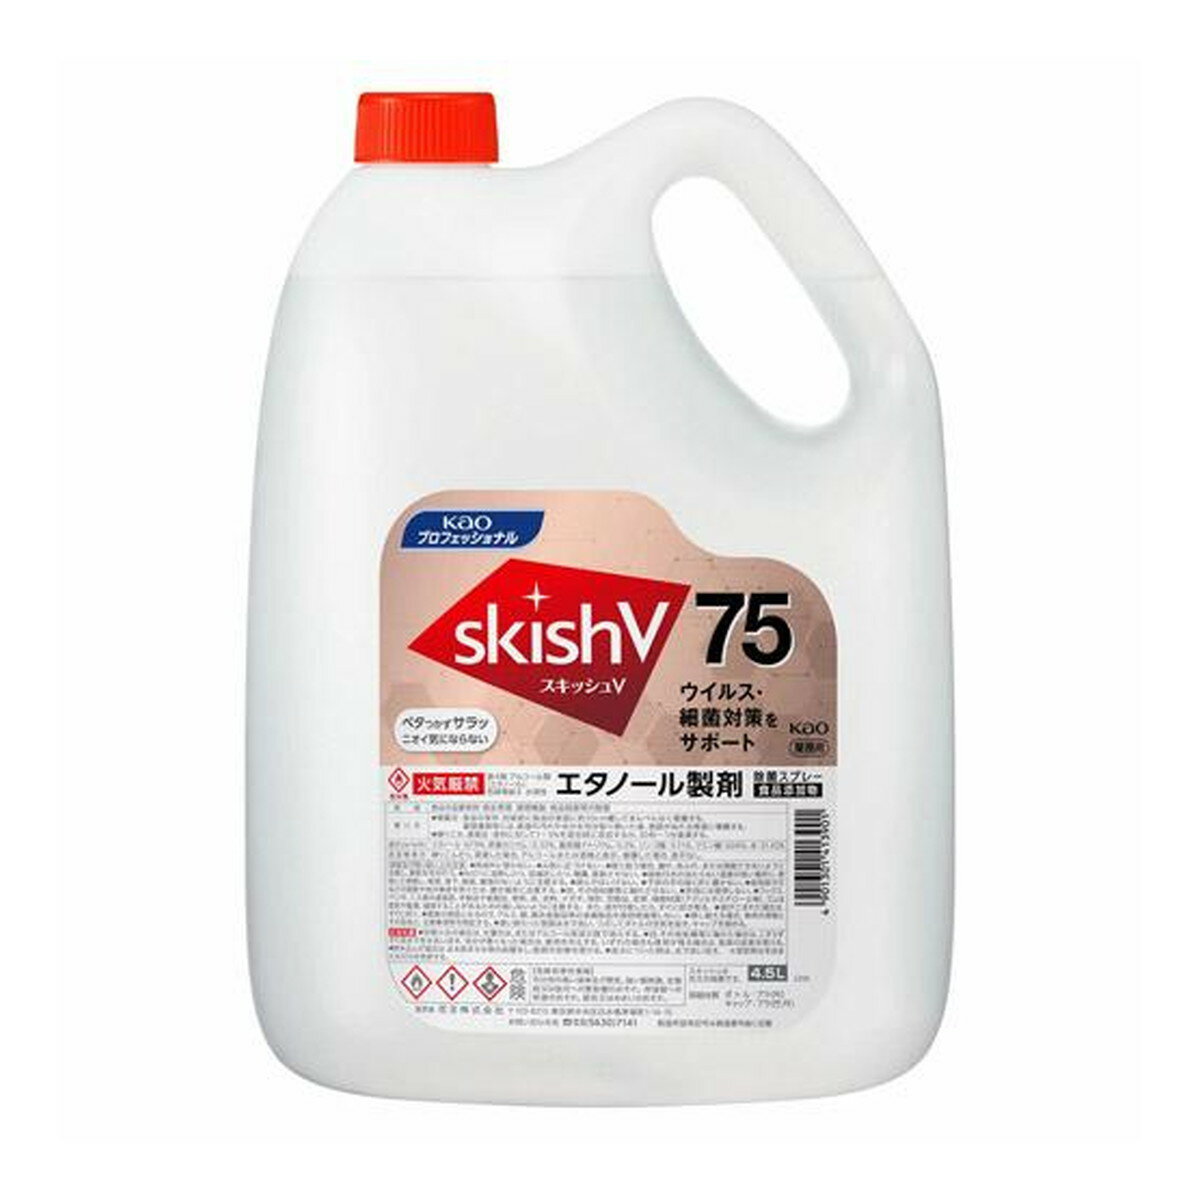 【送料込】花王プロフェッショナル スキッシュ V75 4.5L エタノール製剤 1個